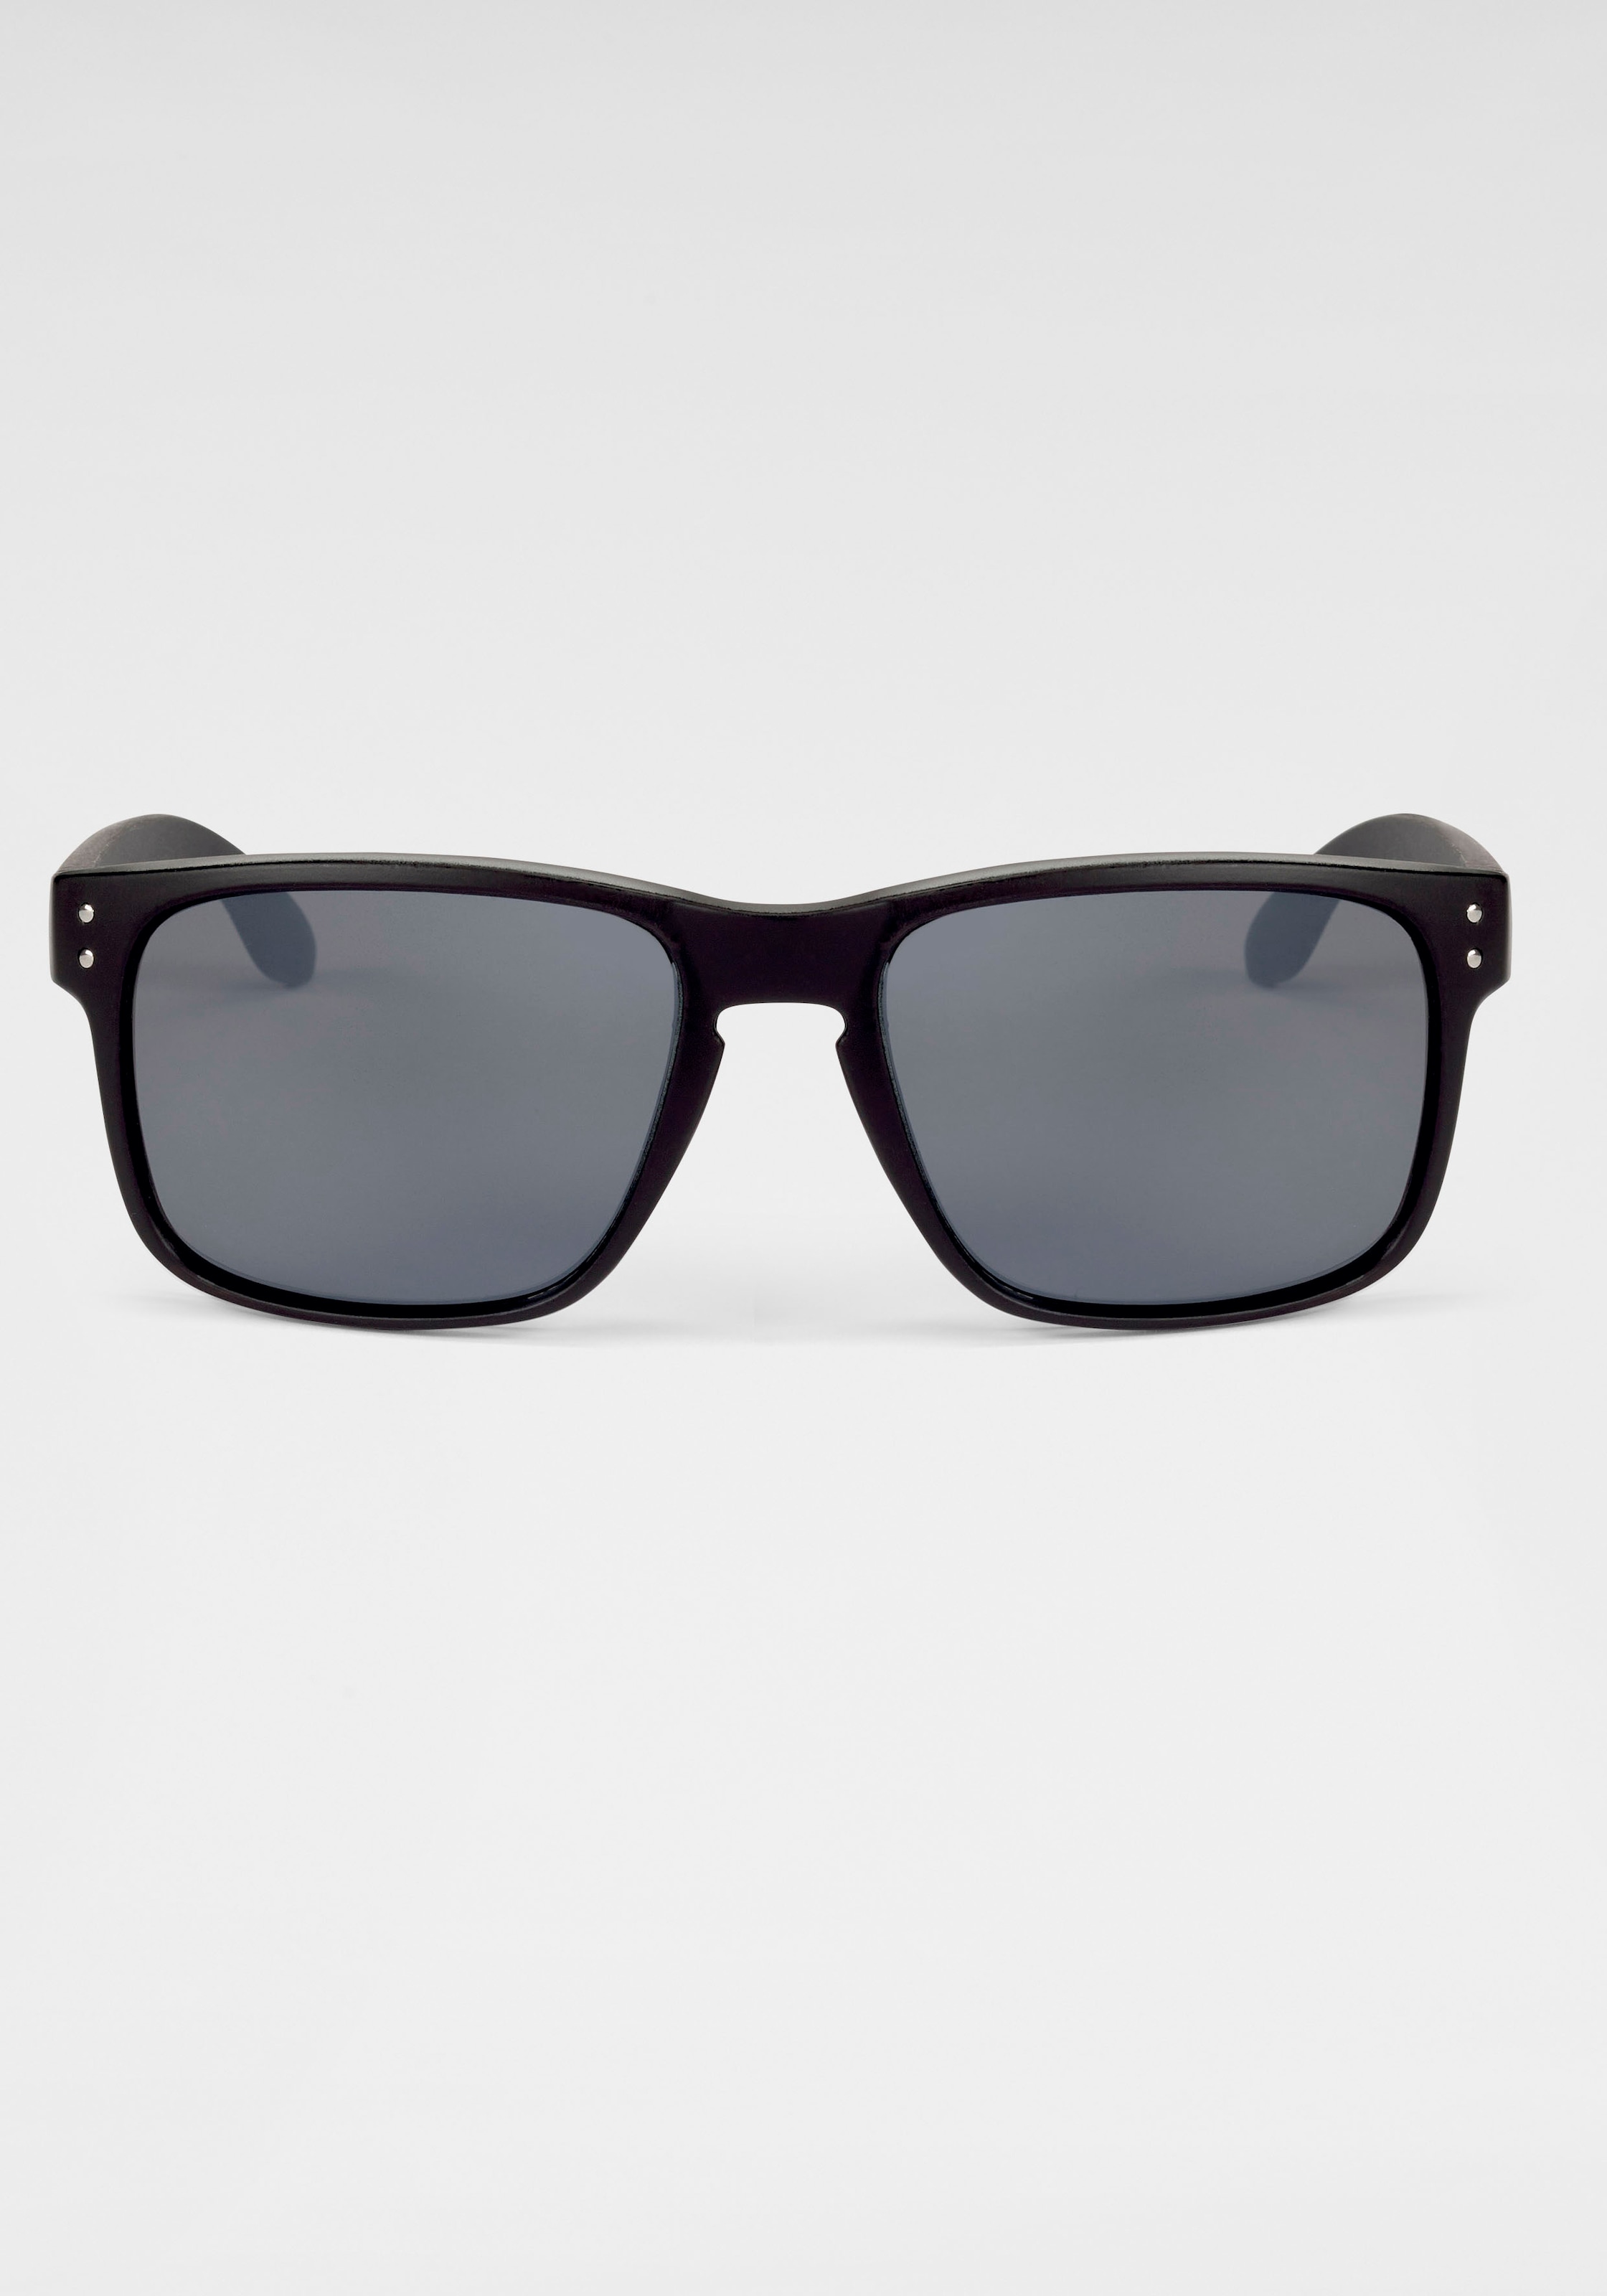 BACK IN BLACK Eyewear Sonnenbrille, Vollrand Sonnenbrille Kunststoff schwarz mit dunklen Gläsern